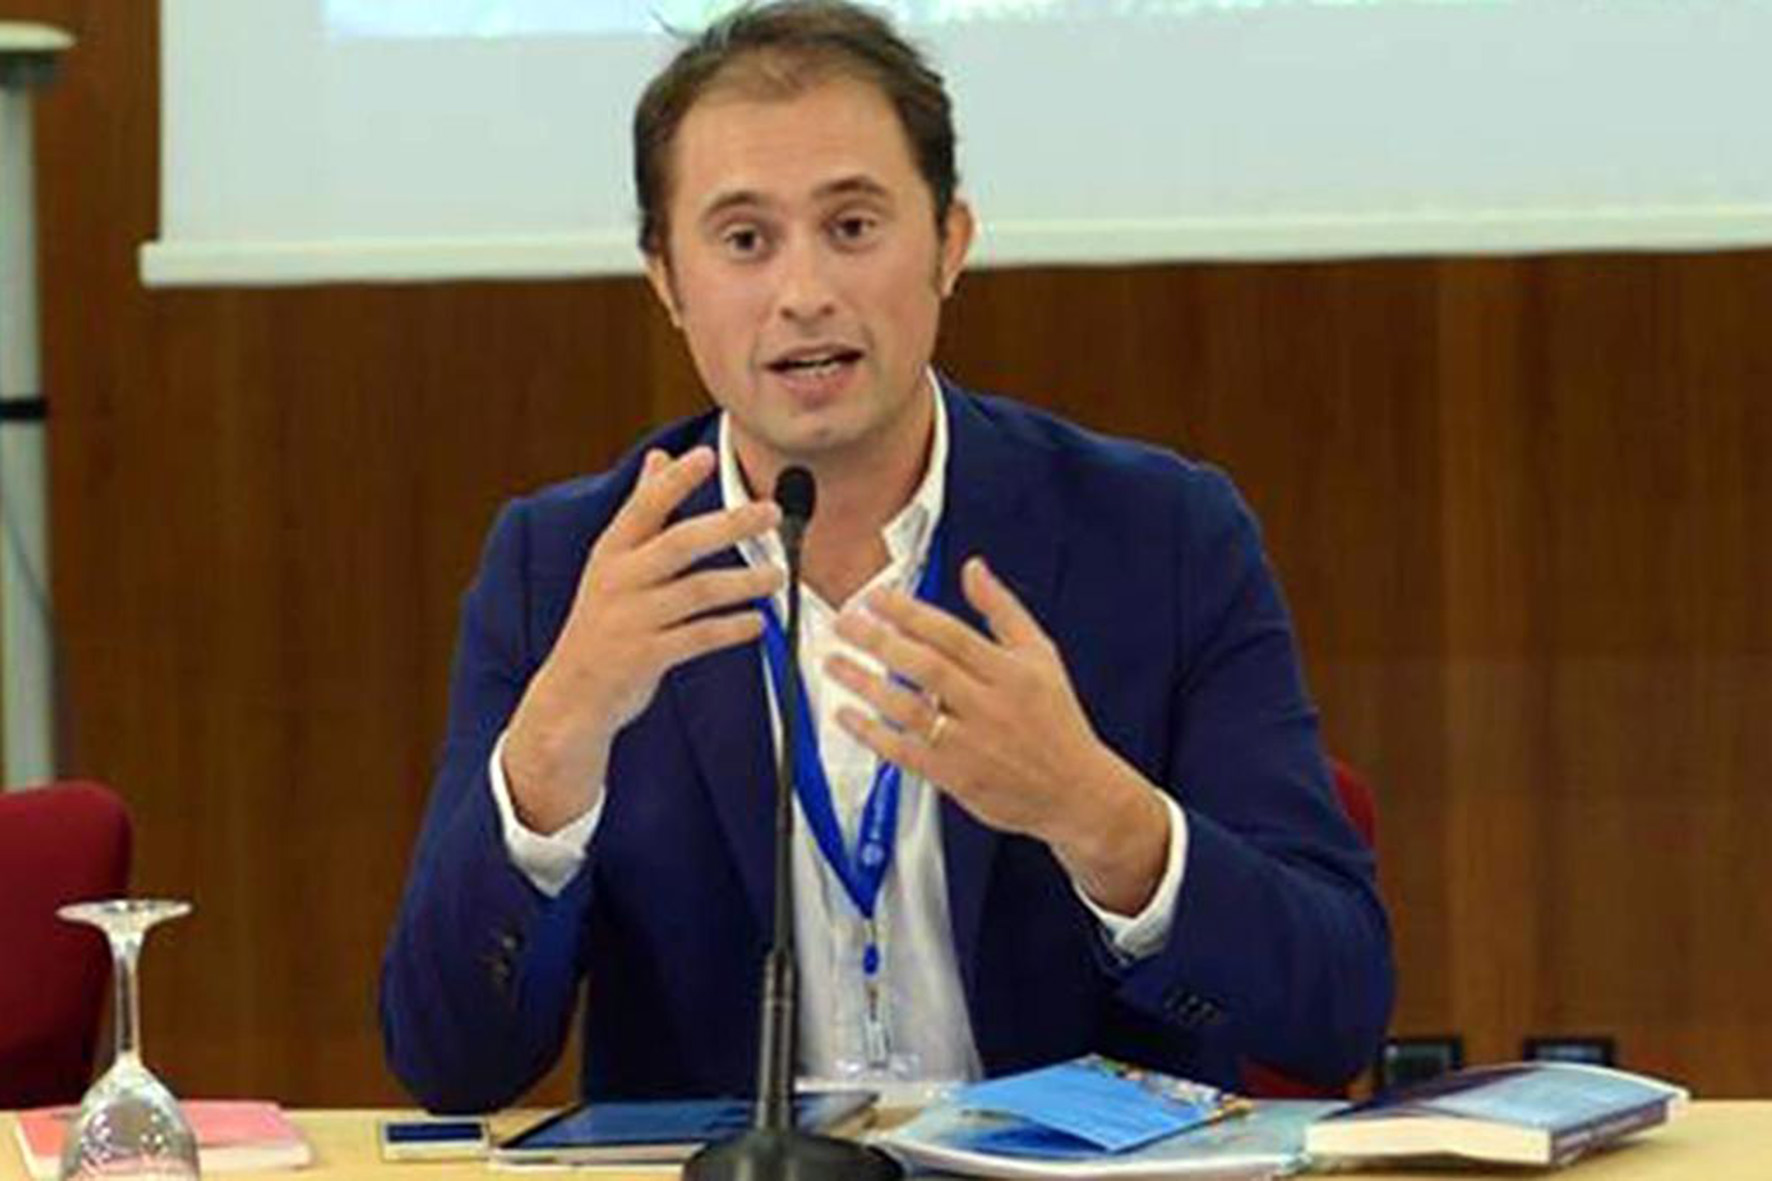 Matteo Bracciali confermato vicepresidente della Federazione Acli Internazionale